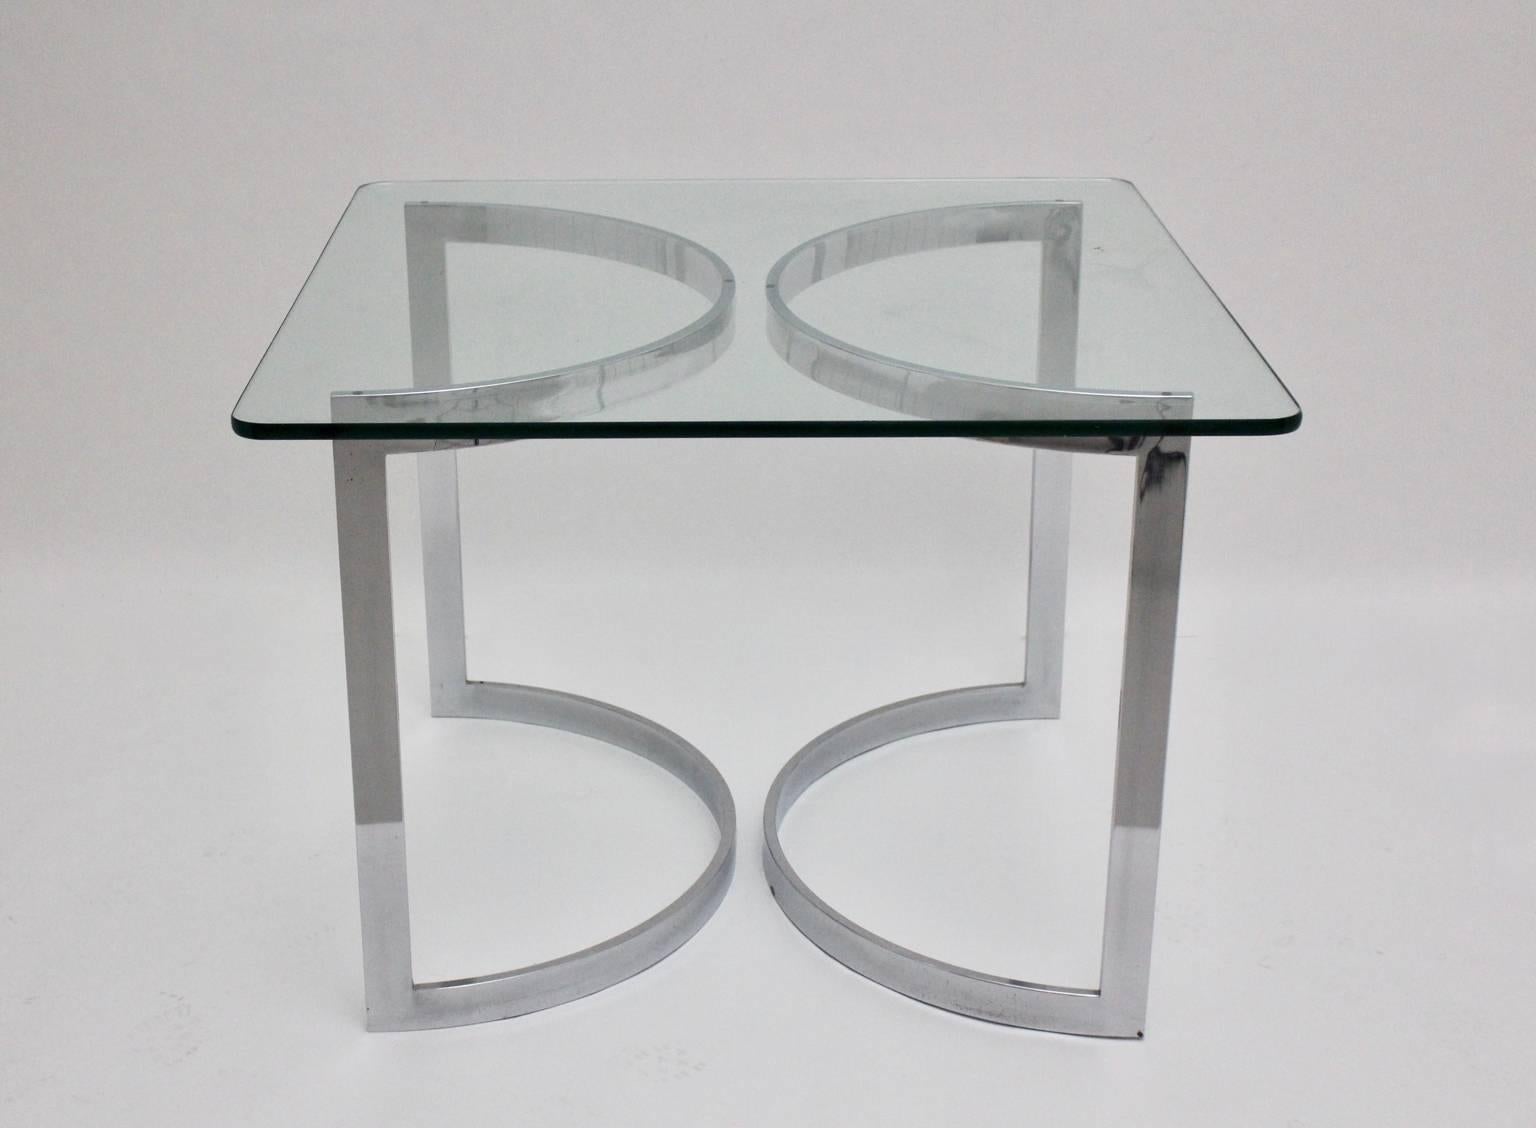 Moderner Vintage-Esszimmertisch aus der Mitte des Jahrhunderts, entworfen von William Plunkett und hergestellt von Merrow Associates, 1970, Vereinigtes Königreich.
Die Basis dieses großartigen sauberen und einfachen schicken Esszimmertisches kann